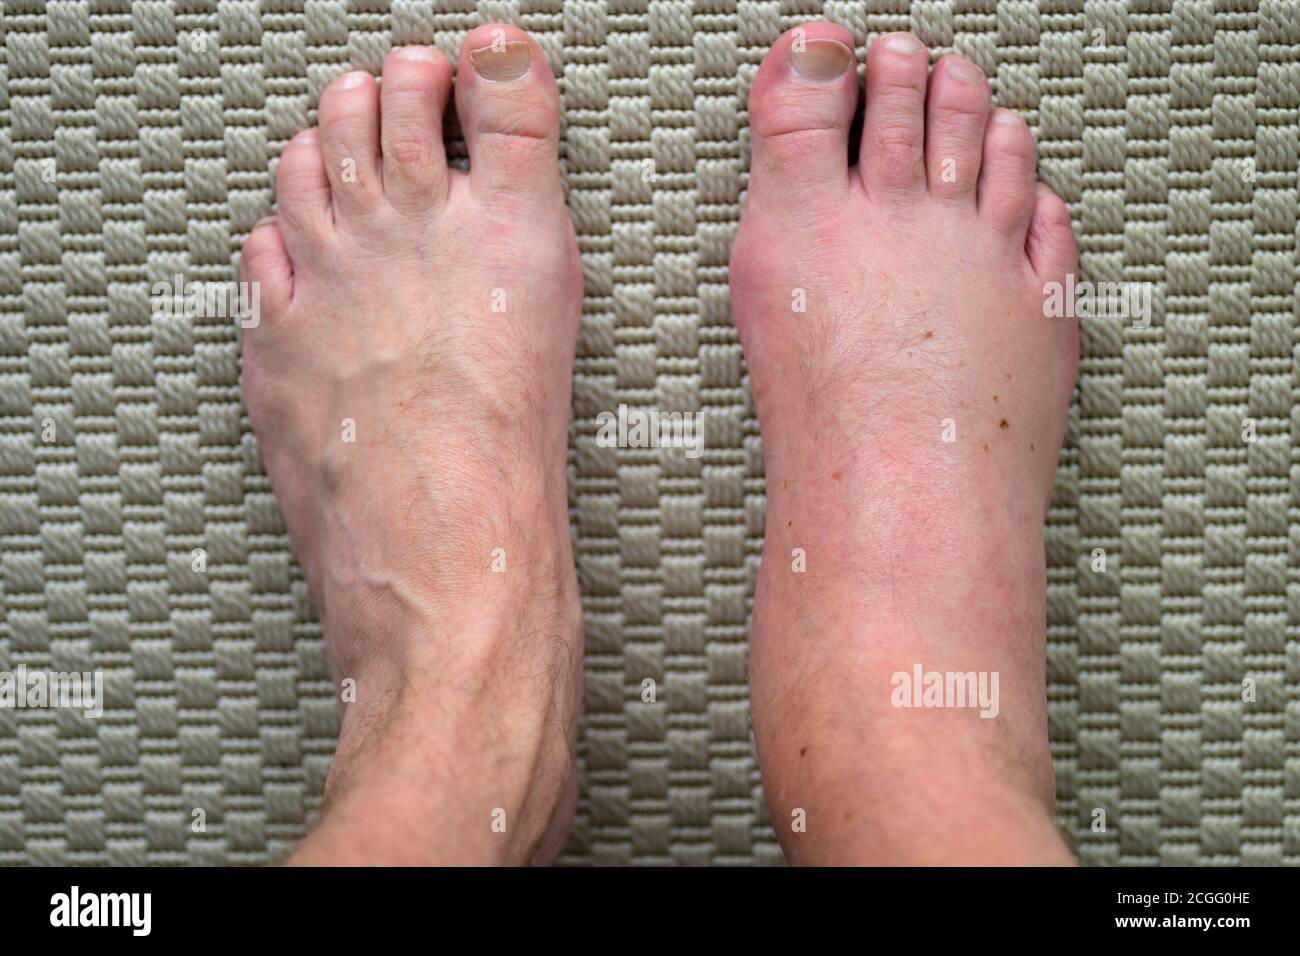 Homme avec un pied mal gonflé et enflammé d'une allergie réaction après une piqûre ou une morsure d'insecte en regardant vers le bas ses pieds d'en haut avec la guérison Banque D'Images